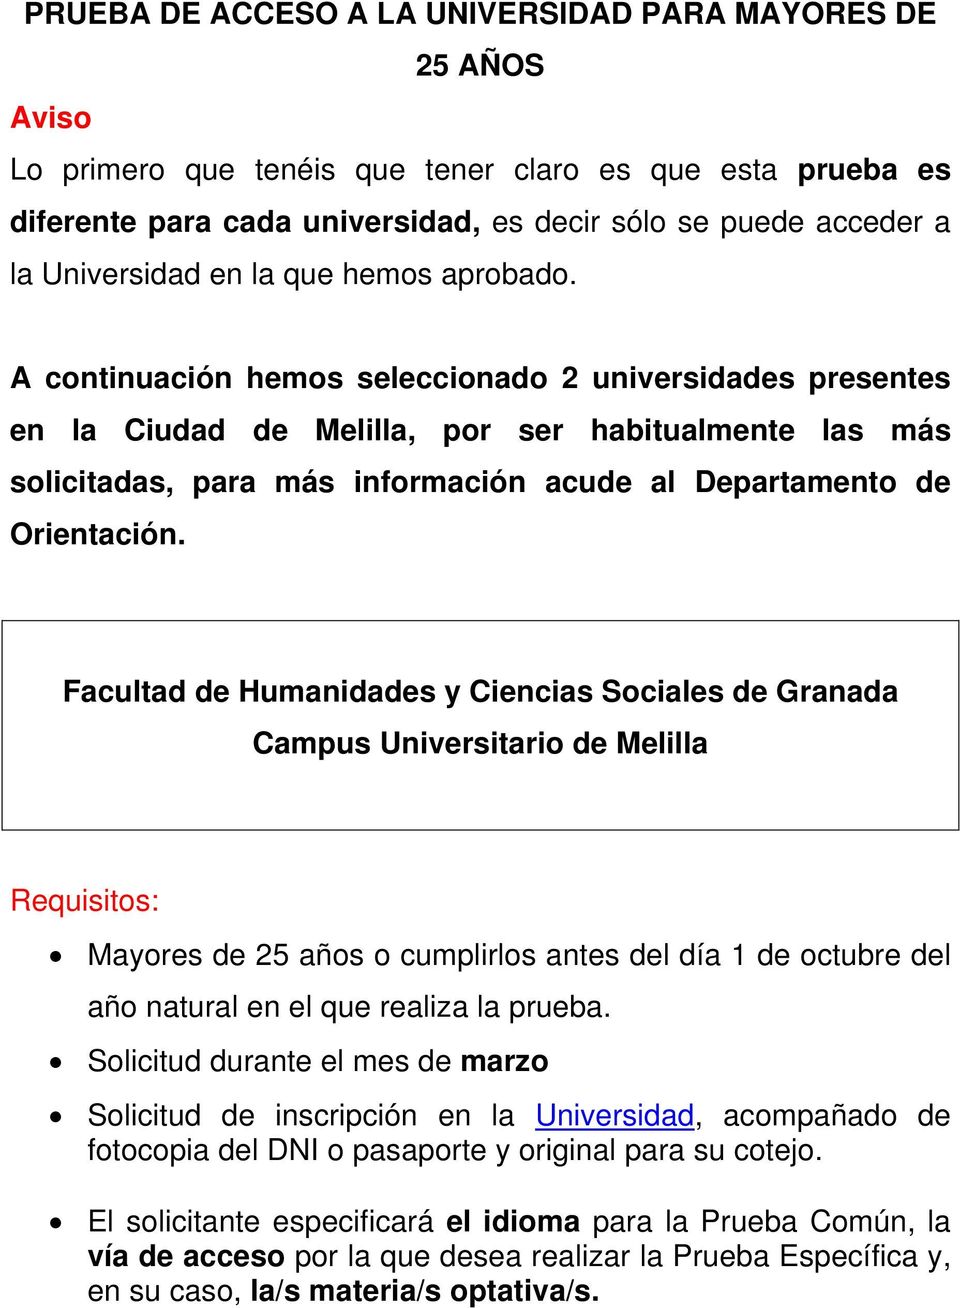 A continuación hemos seleccionado 2 universidades presentes en la Ciudad de Melilla, por ser habitualmente las más solicitadas, para más información acude al Departamento de Orientación.